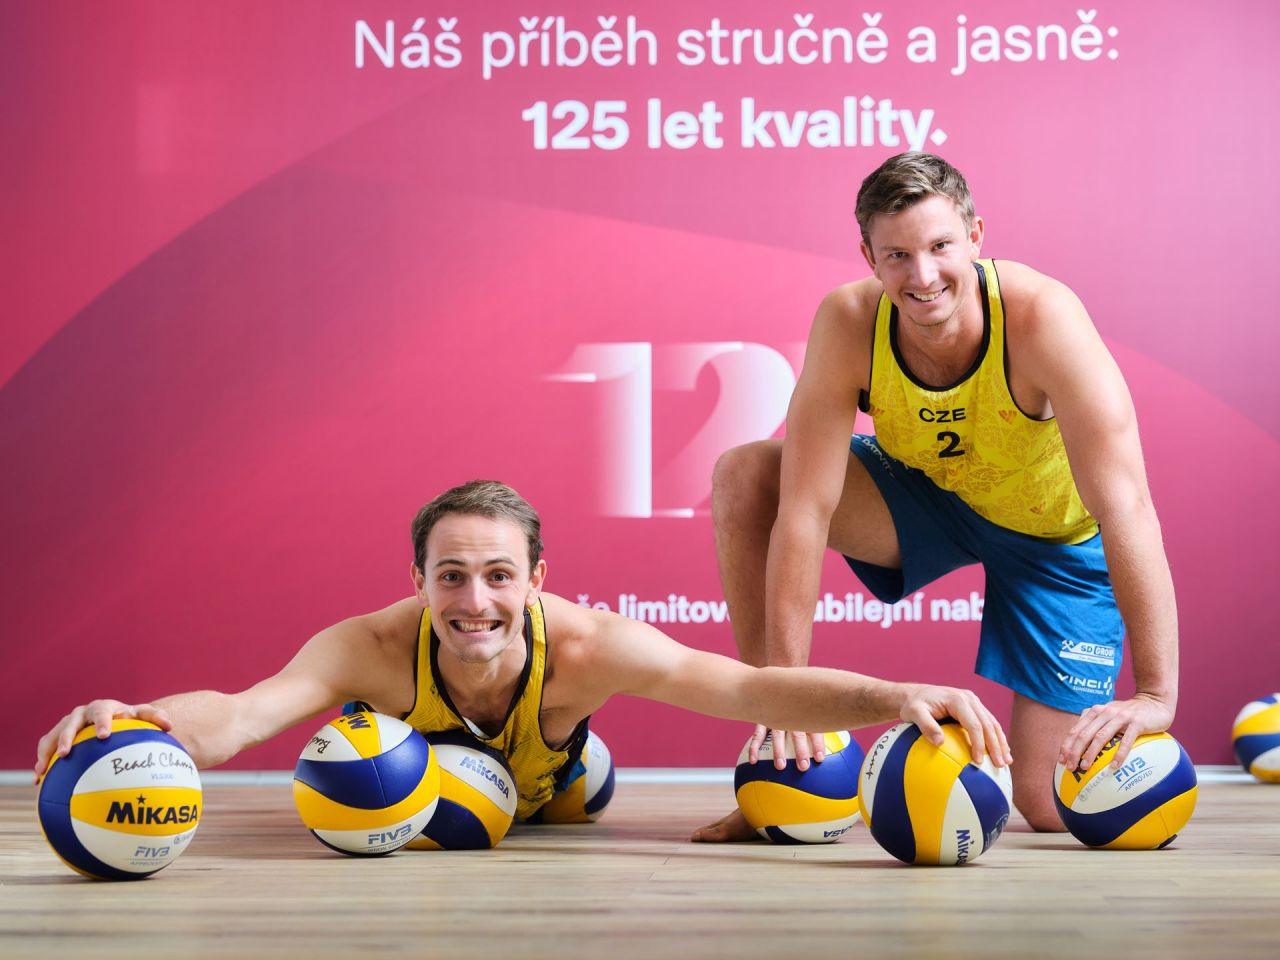 Miele je partnerem beachvolejbalových šampionů Ondřeje Perušiče a Davida Schweinera na cestě za olympijským snem